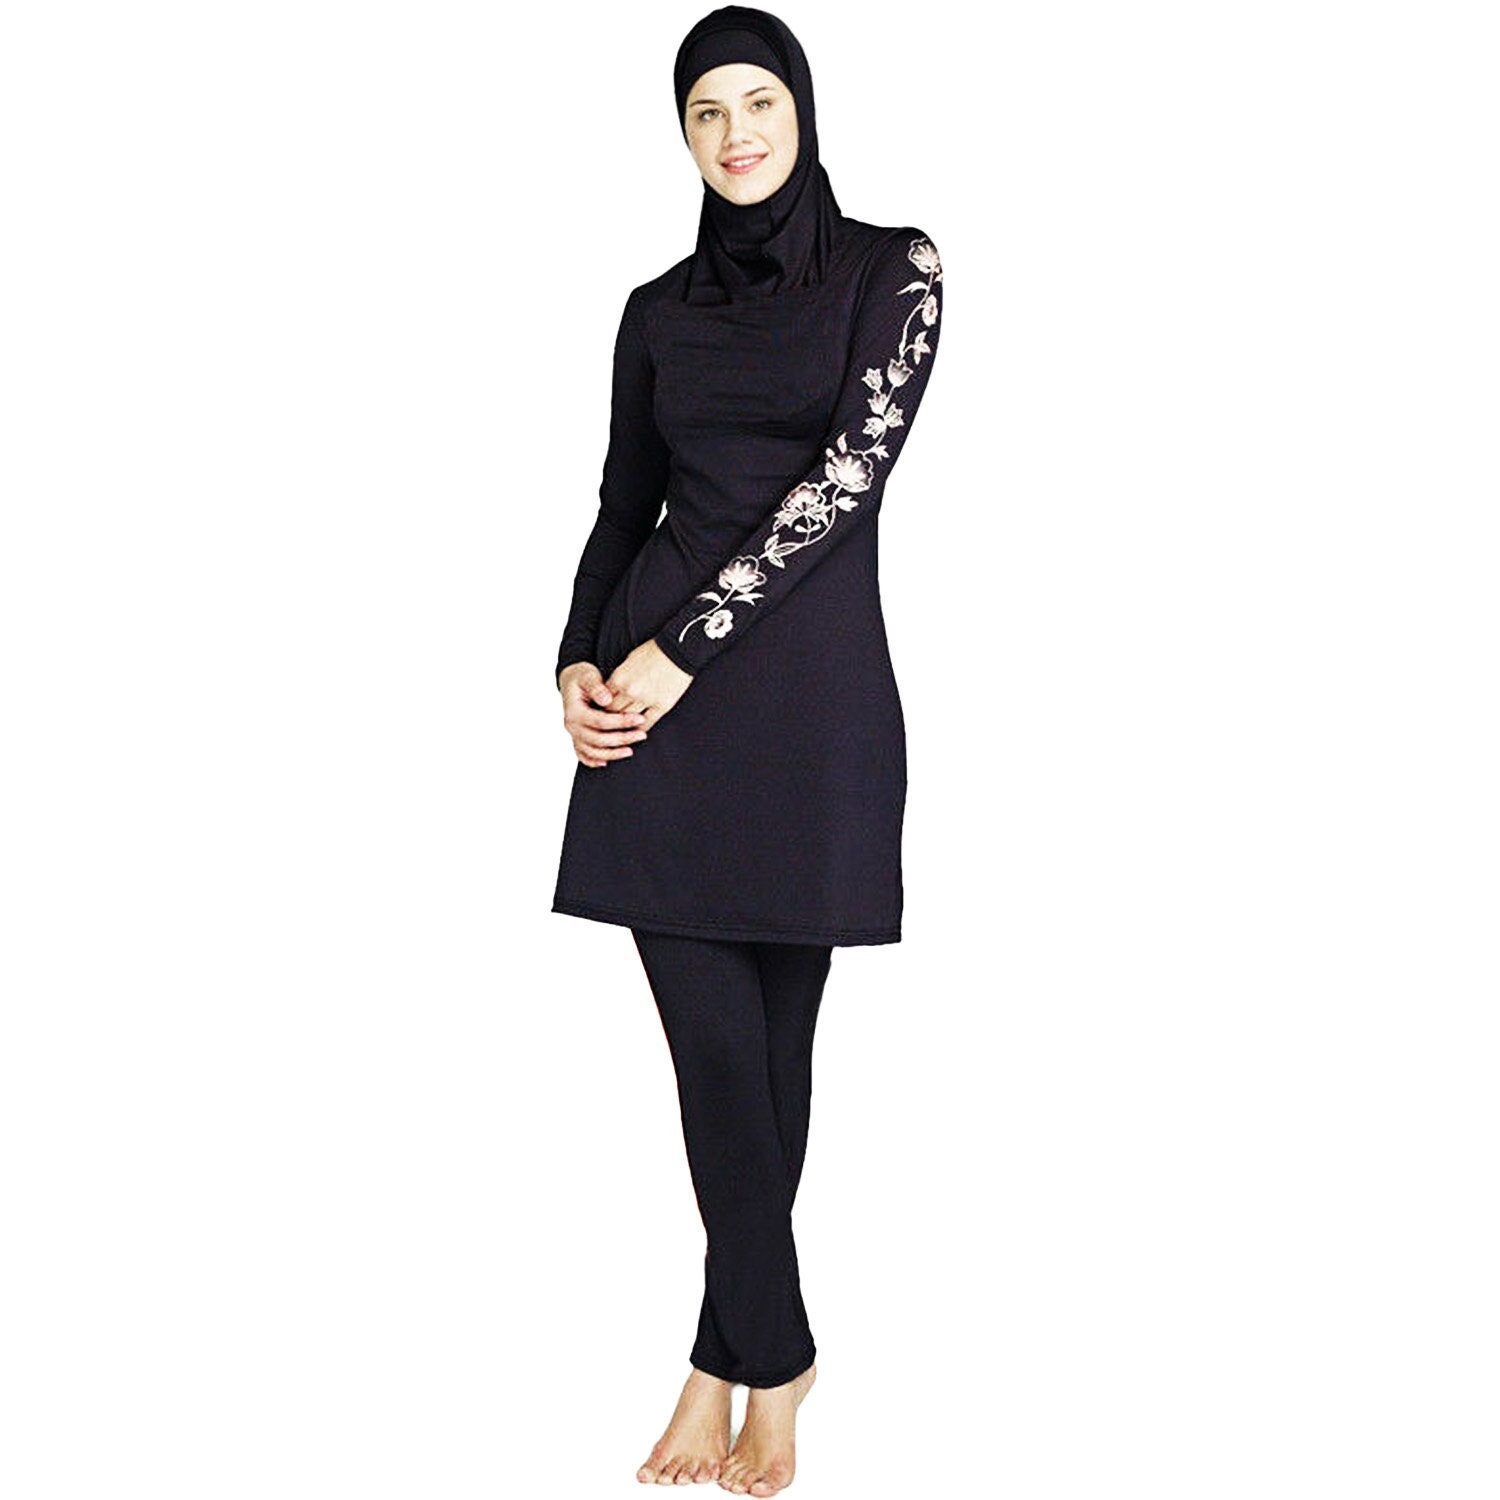 Women Burkini Muslim Swimwear Ladies Modest Swimsuits Three Piece